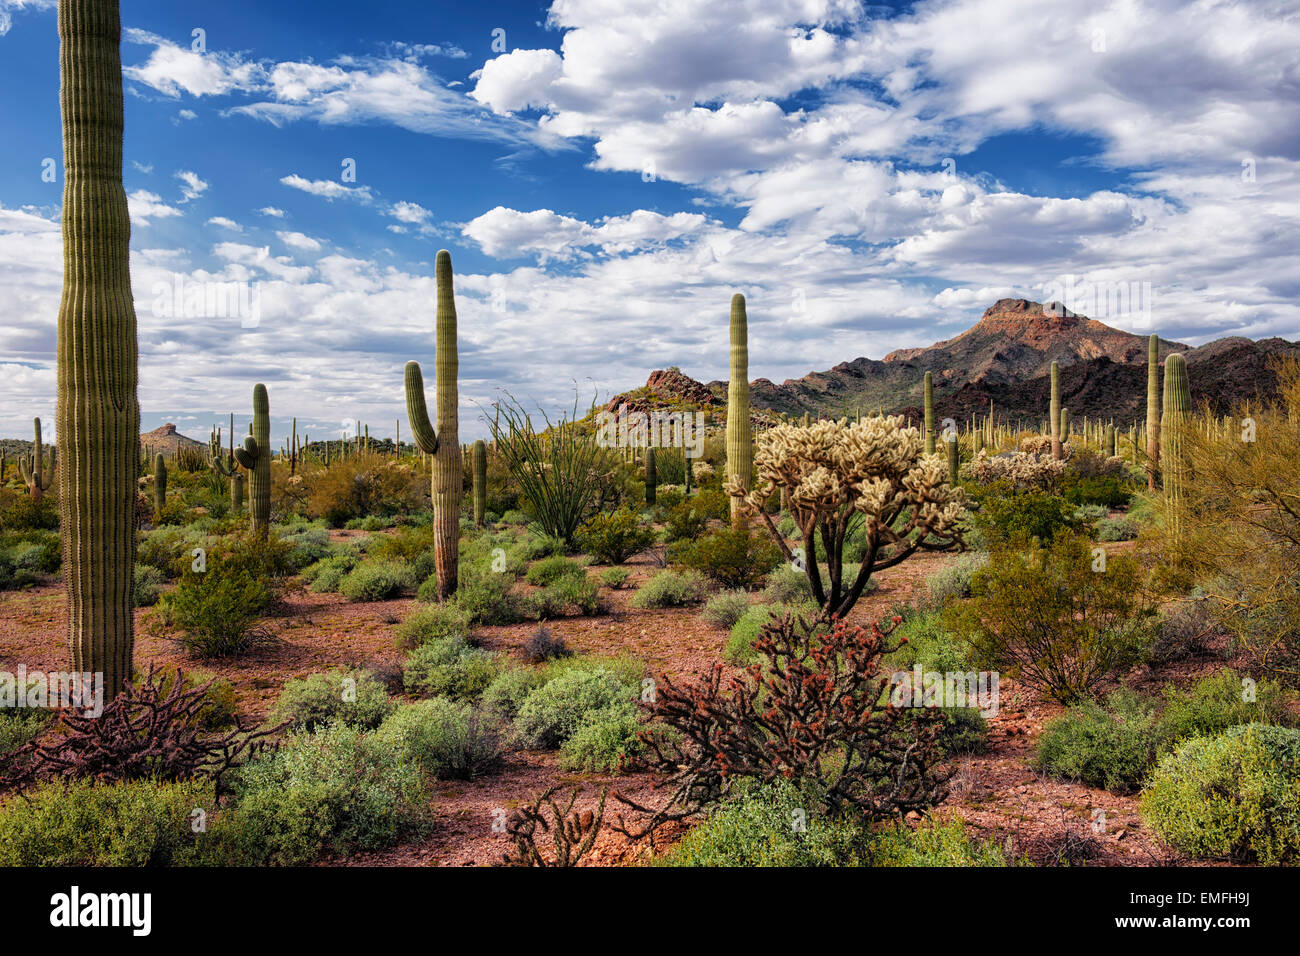 Belle le nuvole passare oltre le molte varietà di cactus in Arizona Deserto Sonoran e organo a canne Cactus monumento nazionale. Foto Stock